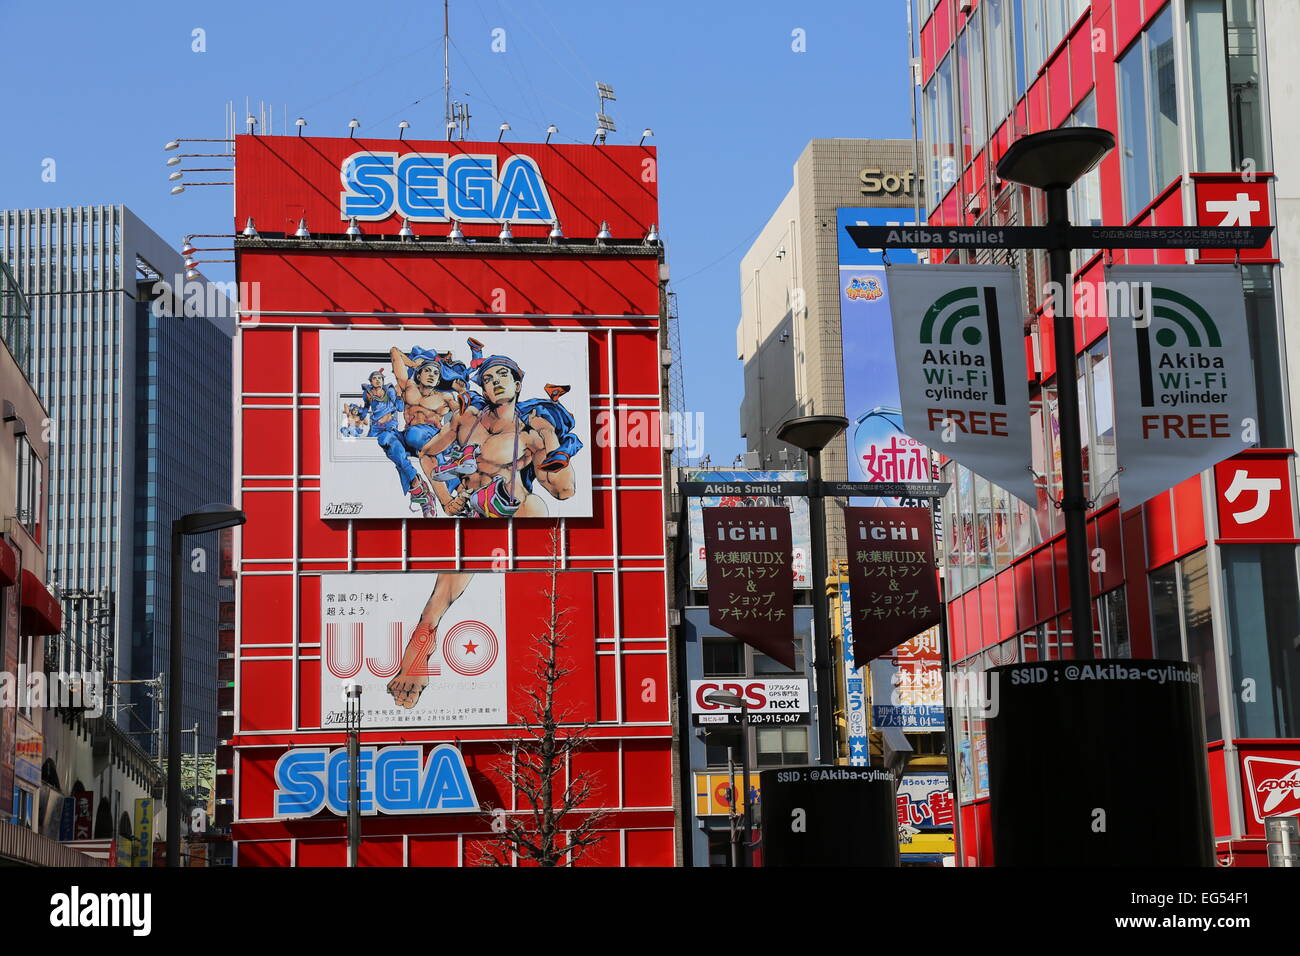 Sega Building in Akihabara, Japan - 2015 Stock Photo